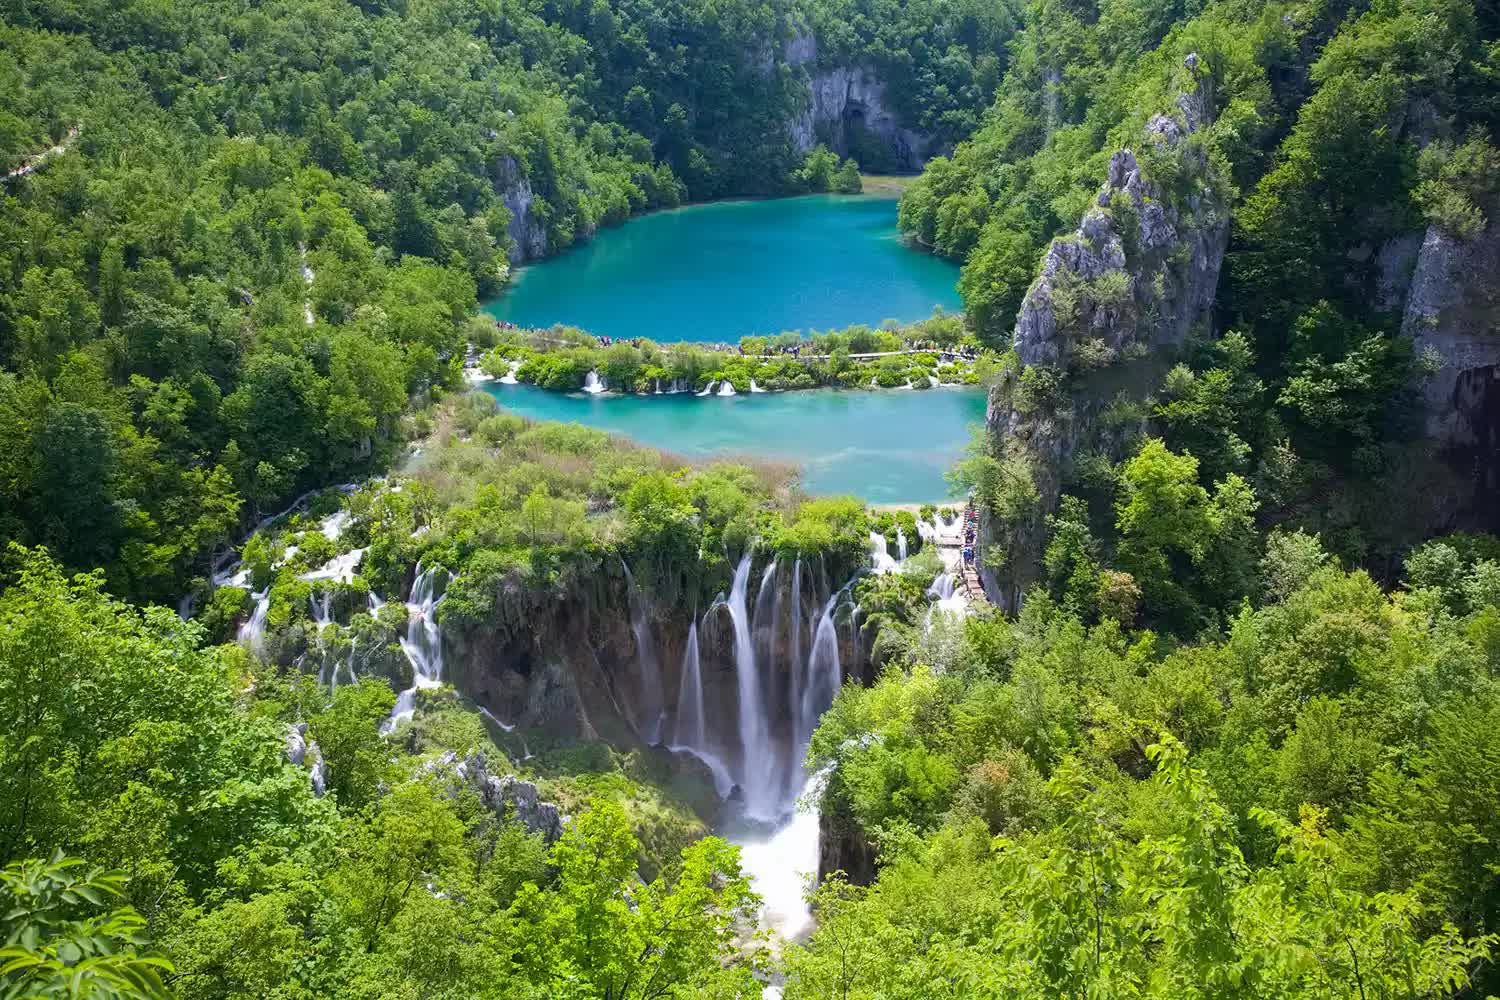 Chiêm ngưỡng 21 thác nước đẹp nhất thế giới: Việt Nam có tên, là thác nắm kỷ lục Đông Nam Á - Ảnh 10.